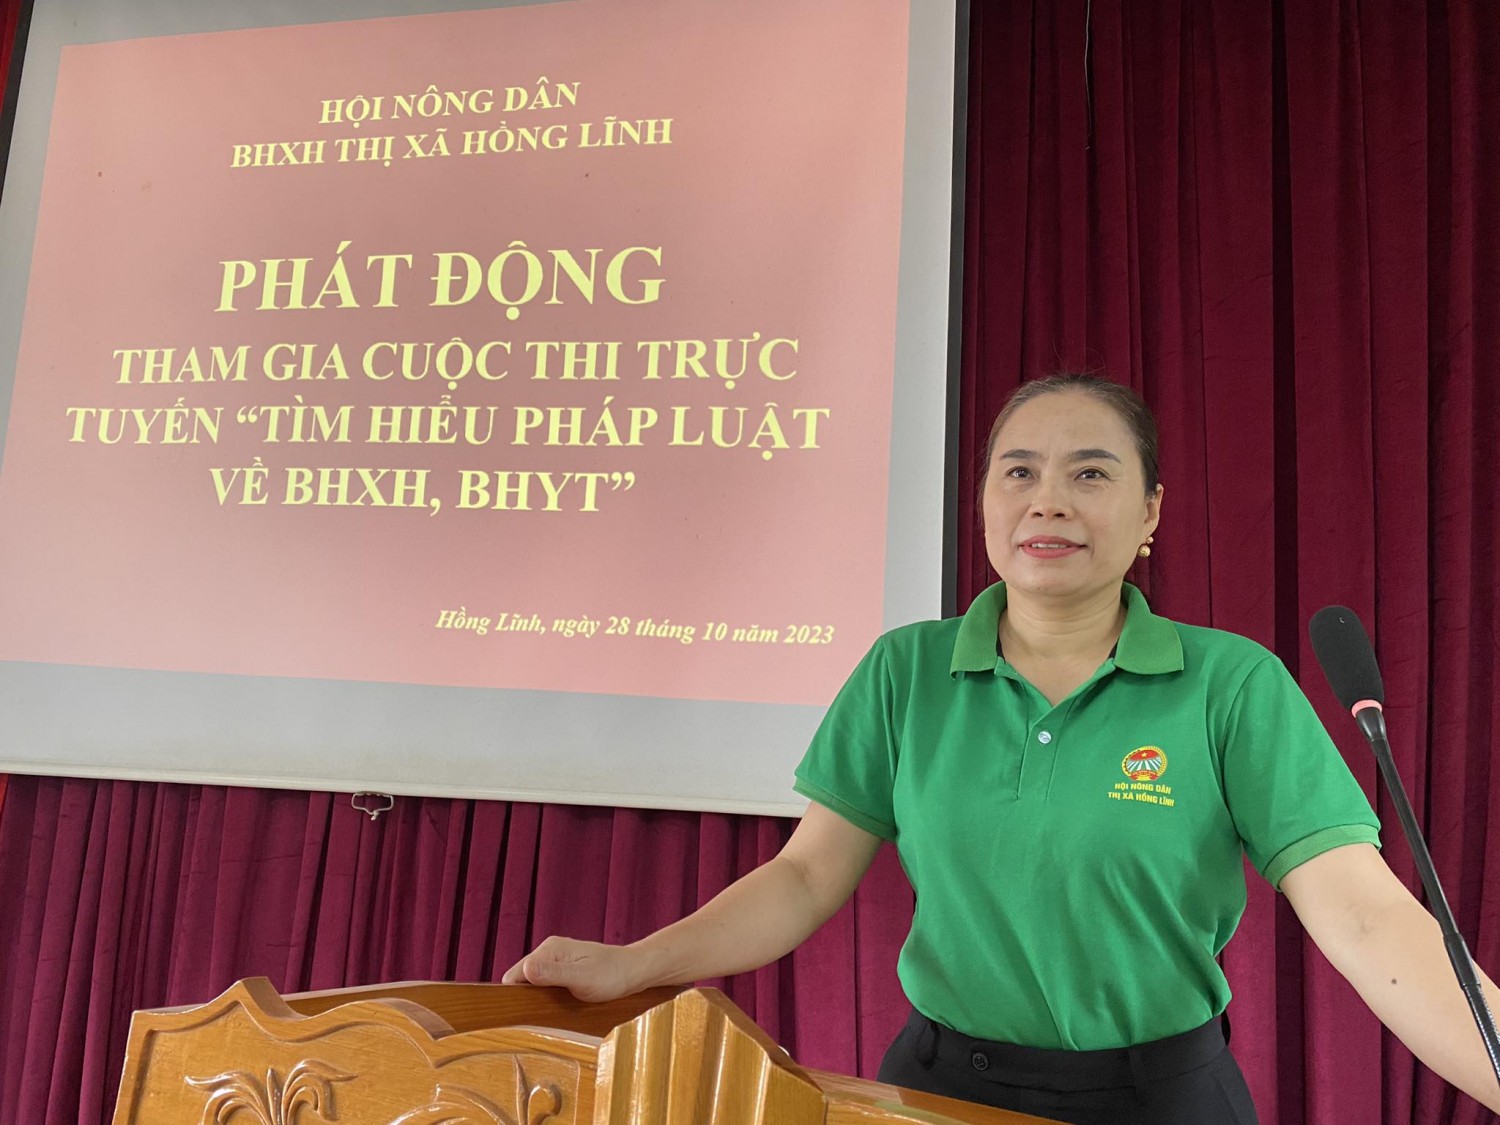 Đồng chí Lê Thị Thu Hiền - Chủ tịch Hội Nông dân thị xã phát động cán bộ, hội viên tham gia Cuộc thi trực tuyến Tìm hiểu pháp luật về BHXH, BHYT